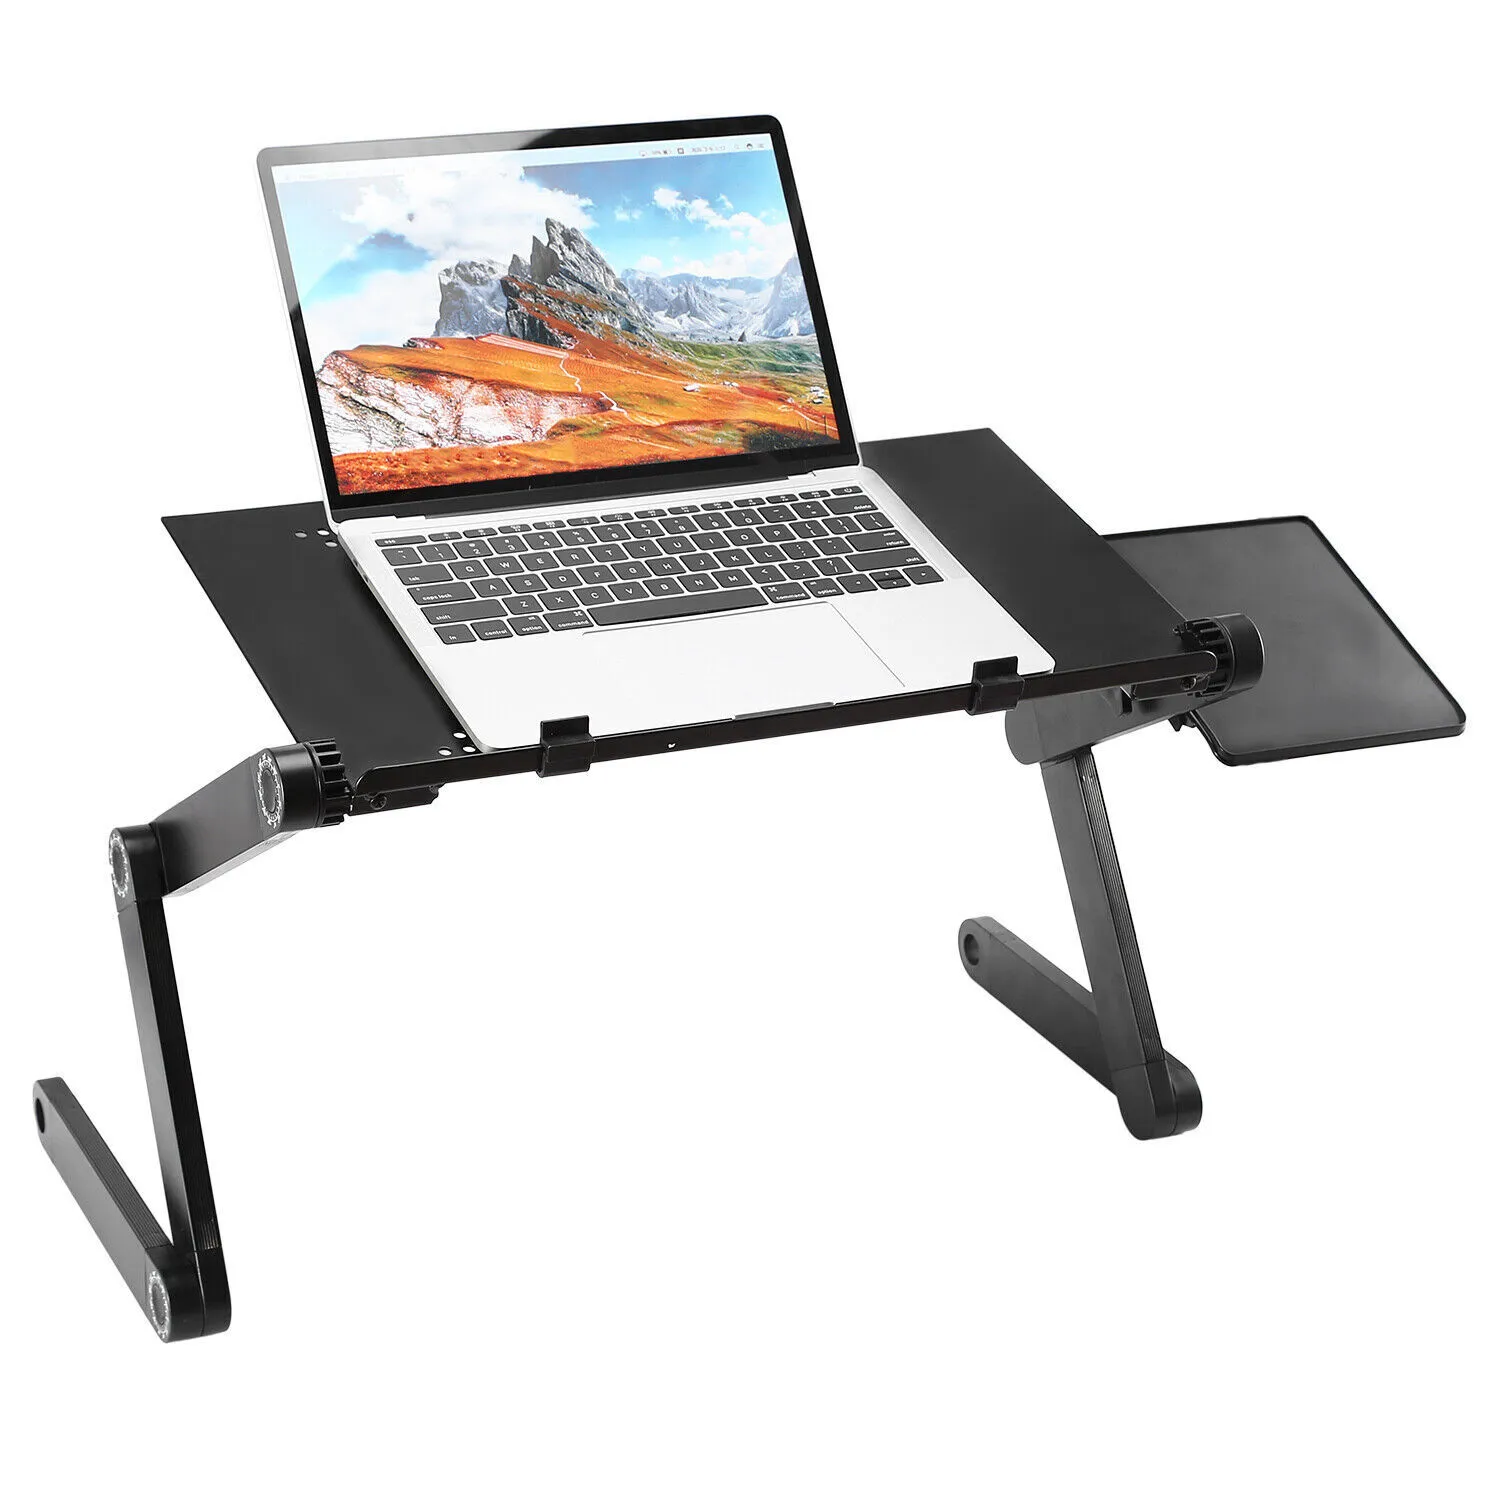 Justerbar bärbar datorbord Stand Tray Soffa Bed Notebook Foldbar Desk + Cooling Fan